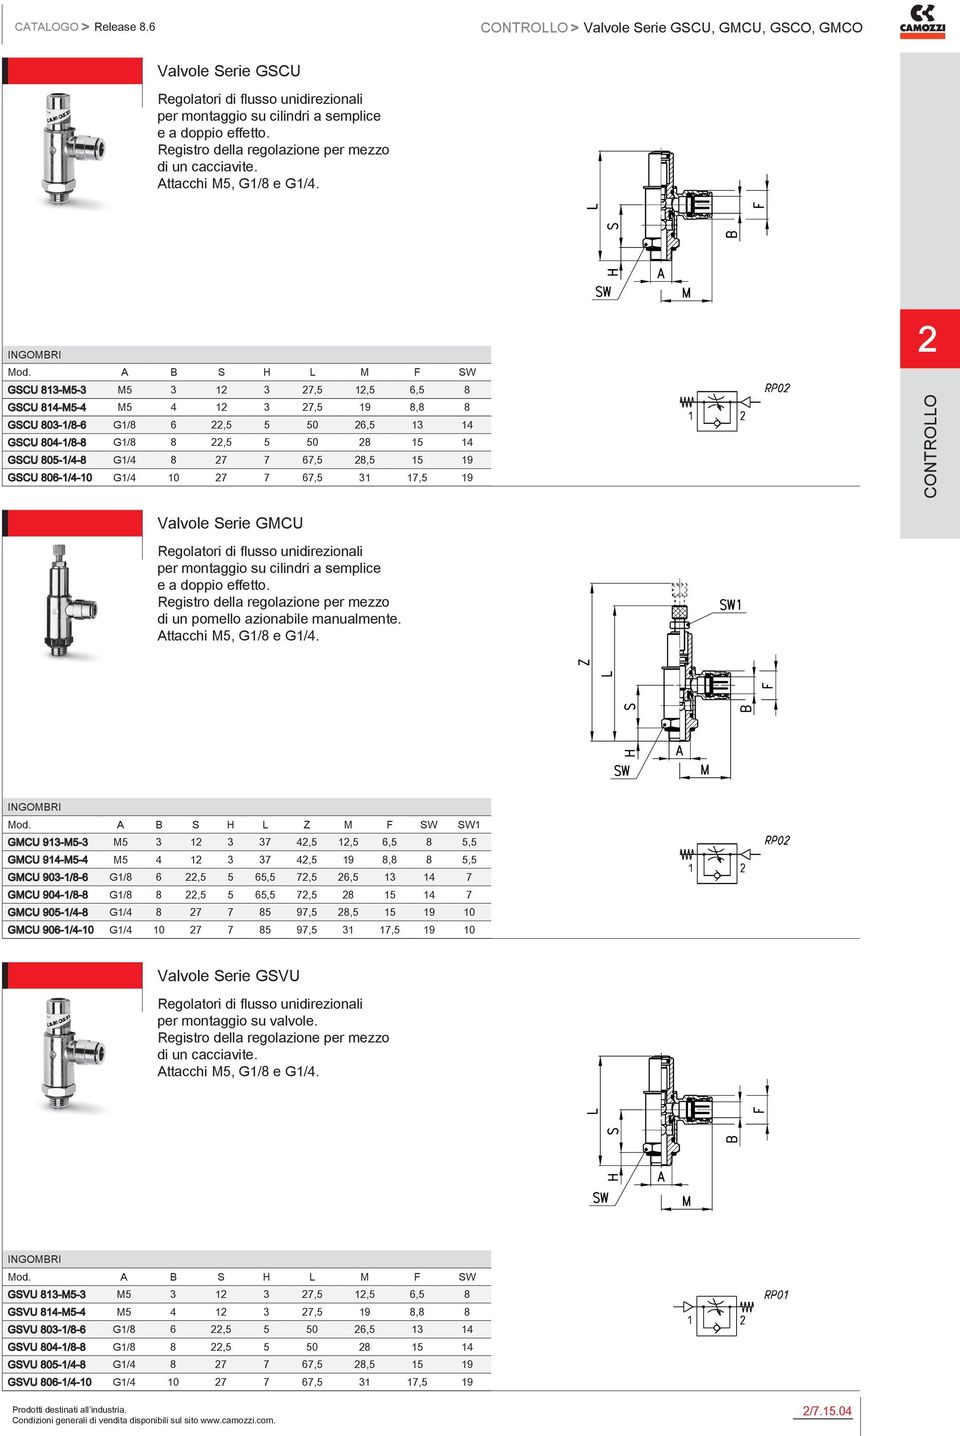 806-1/4-10 G1/4 10 7 7 67,5 31 17,5 19 Valvole Serie GMCU per montaggio su cilindri a semplice e a doppio effetto.